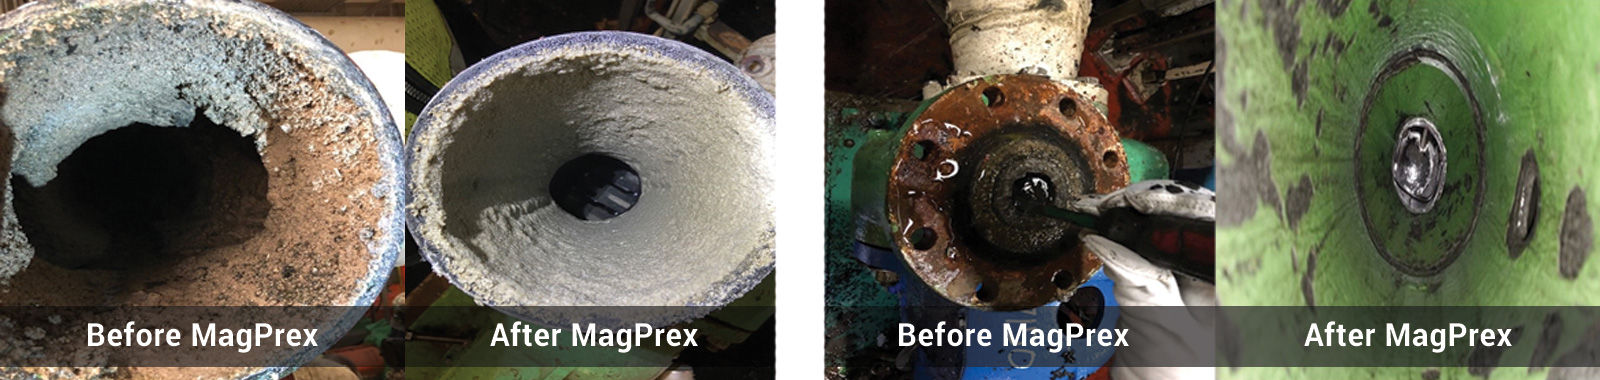 在安装MagPrex™之前和之后集中管道和泵。